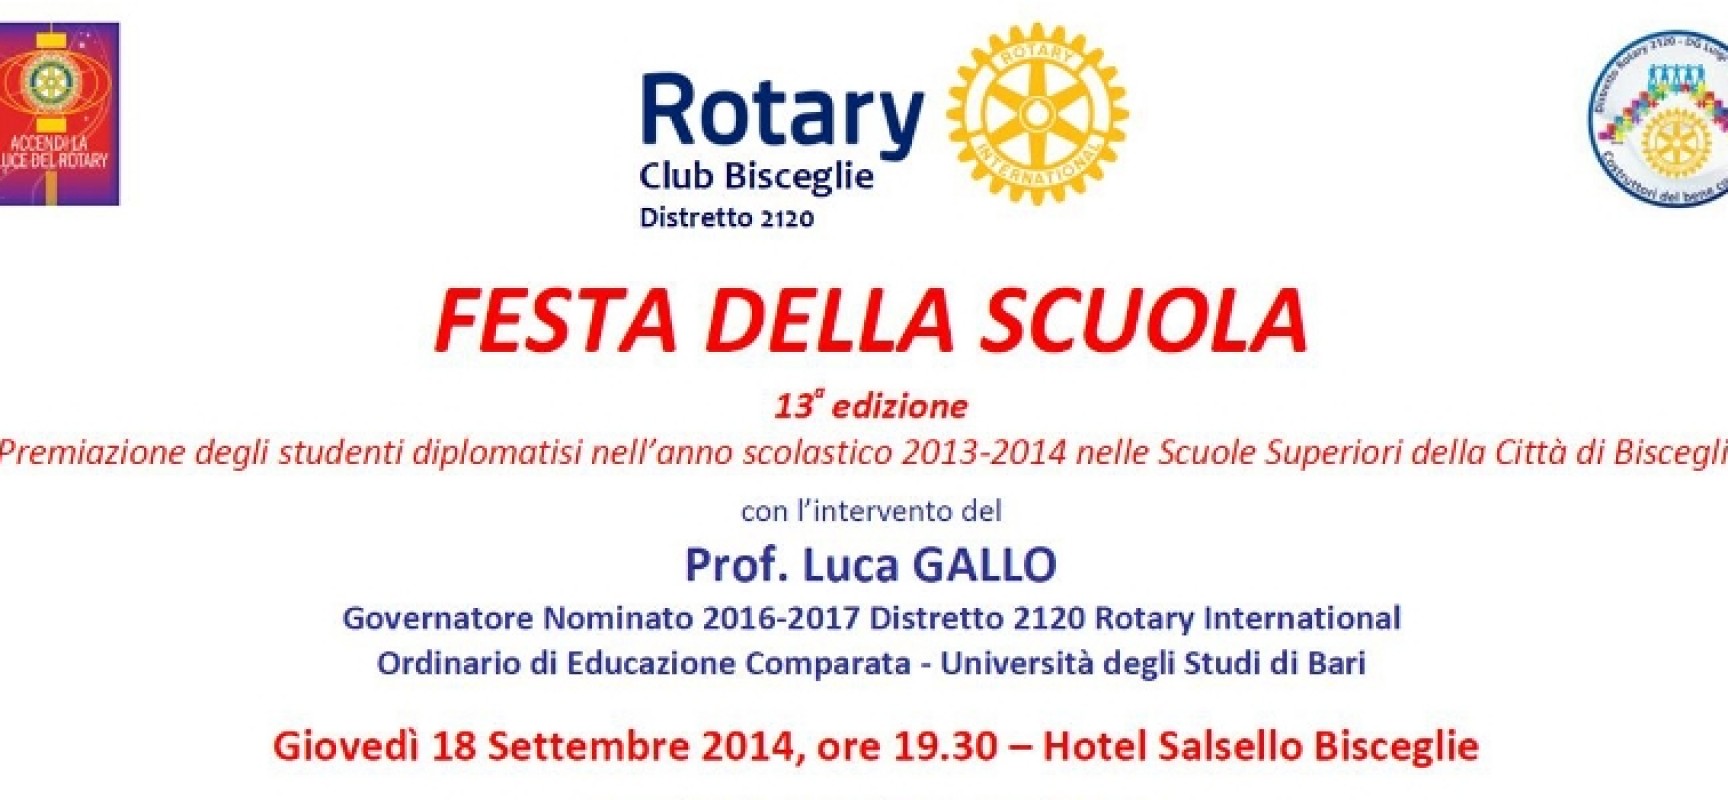 Festa della Scuola, il Rotary Club Bisceglie presenta la tredicesima edizione